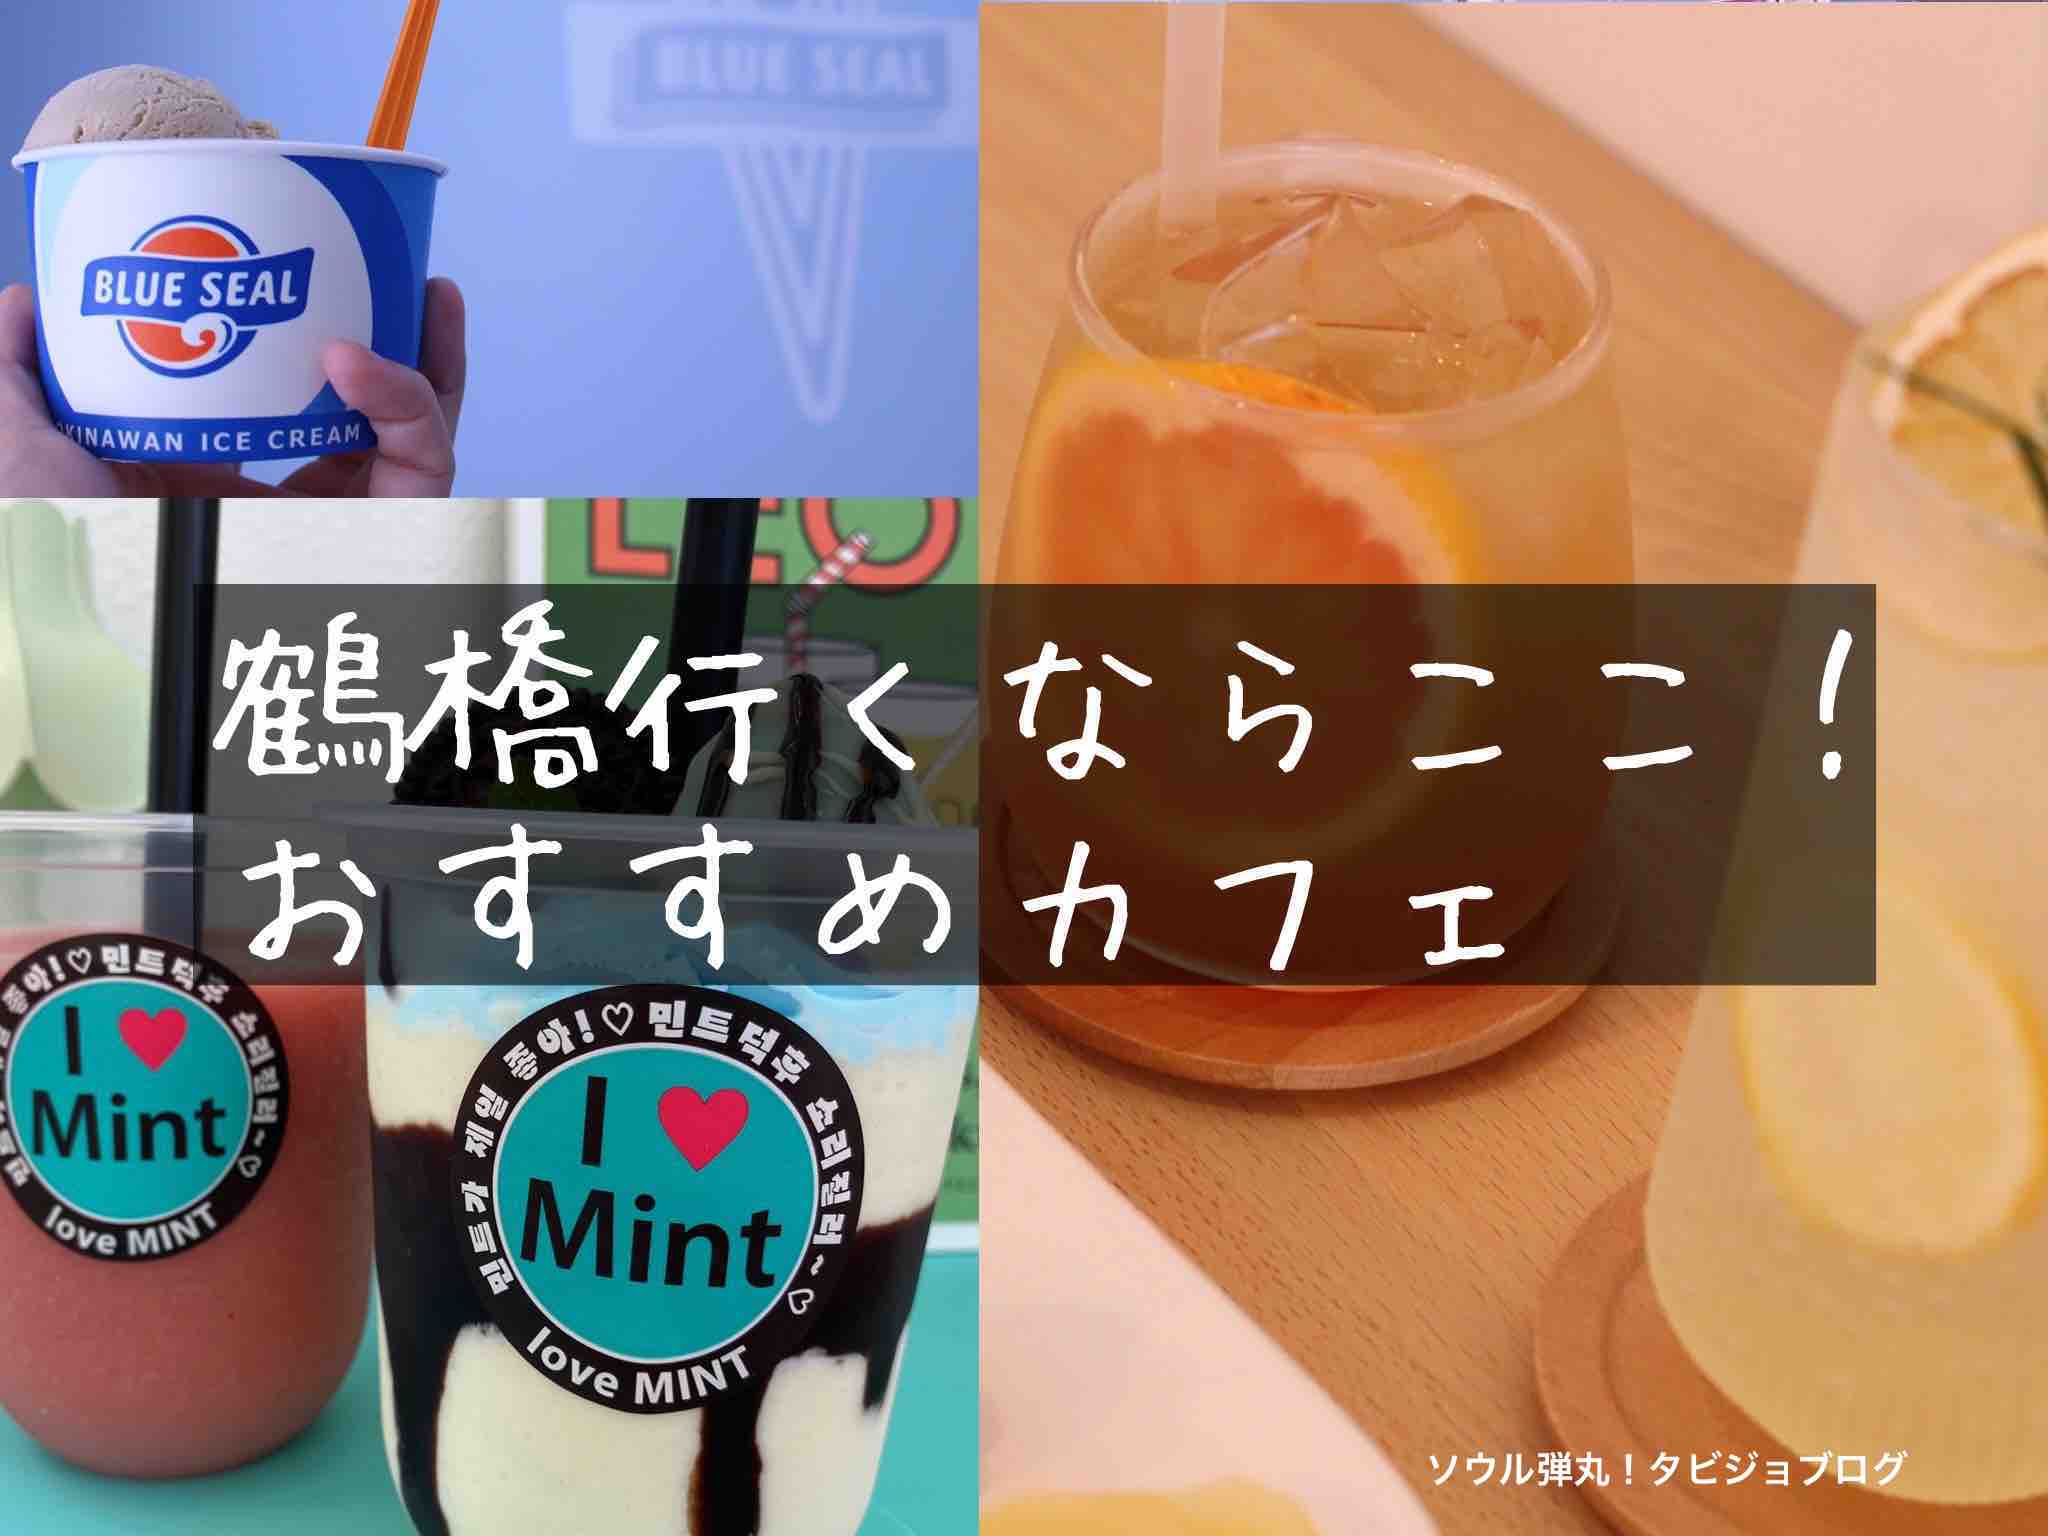 鶴橋に来たらここ 行くべき おしゃれカフェ10選 韓国風 K Pop ソウル弾丸 タビジョブログ